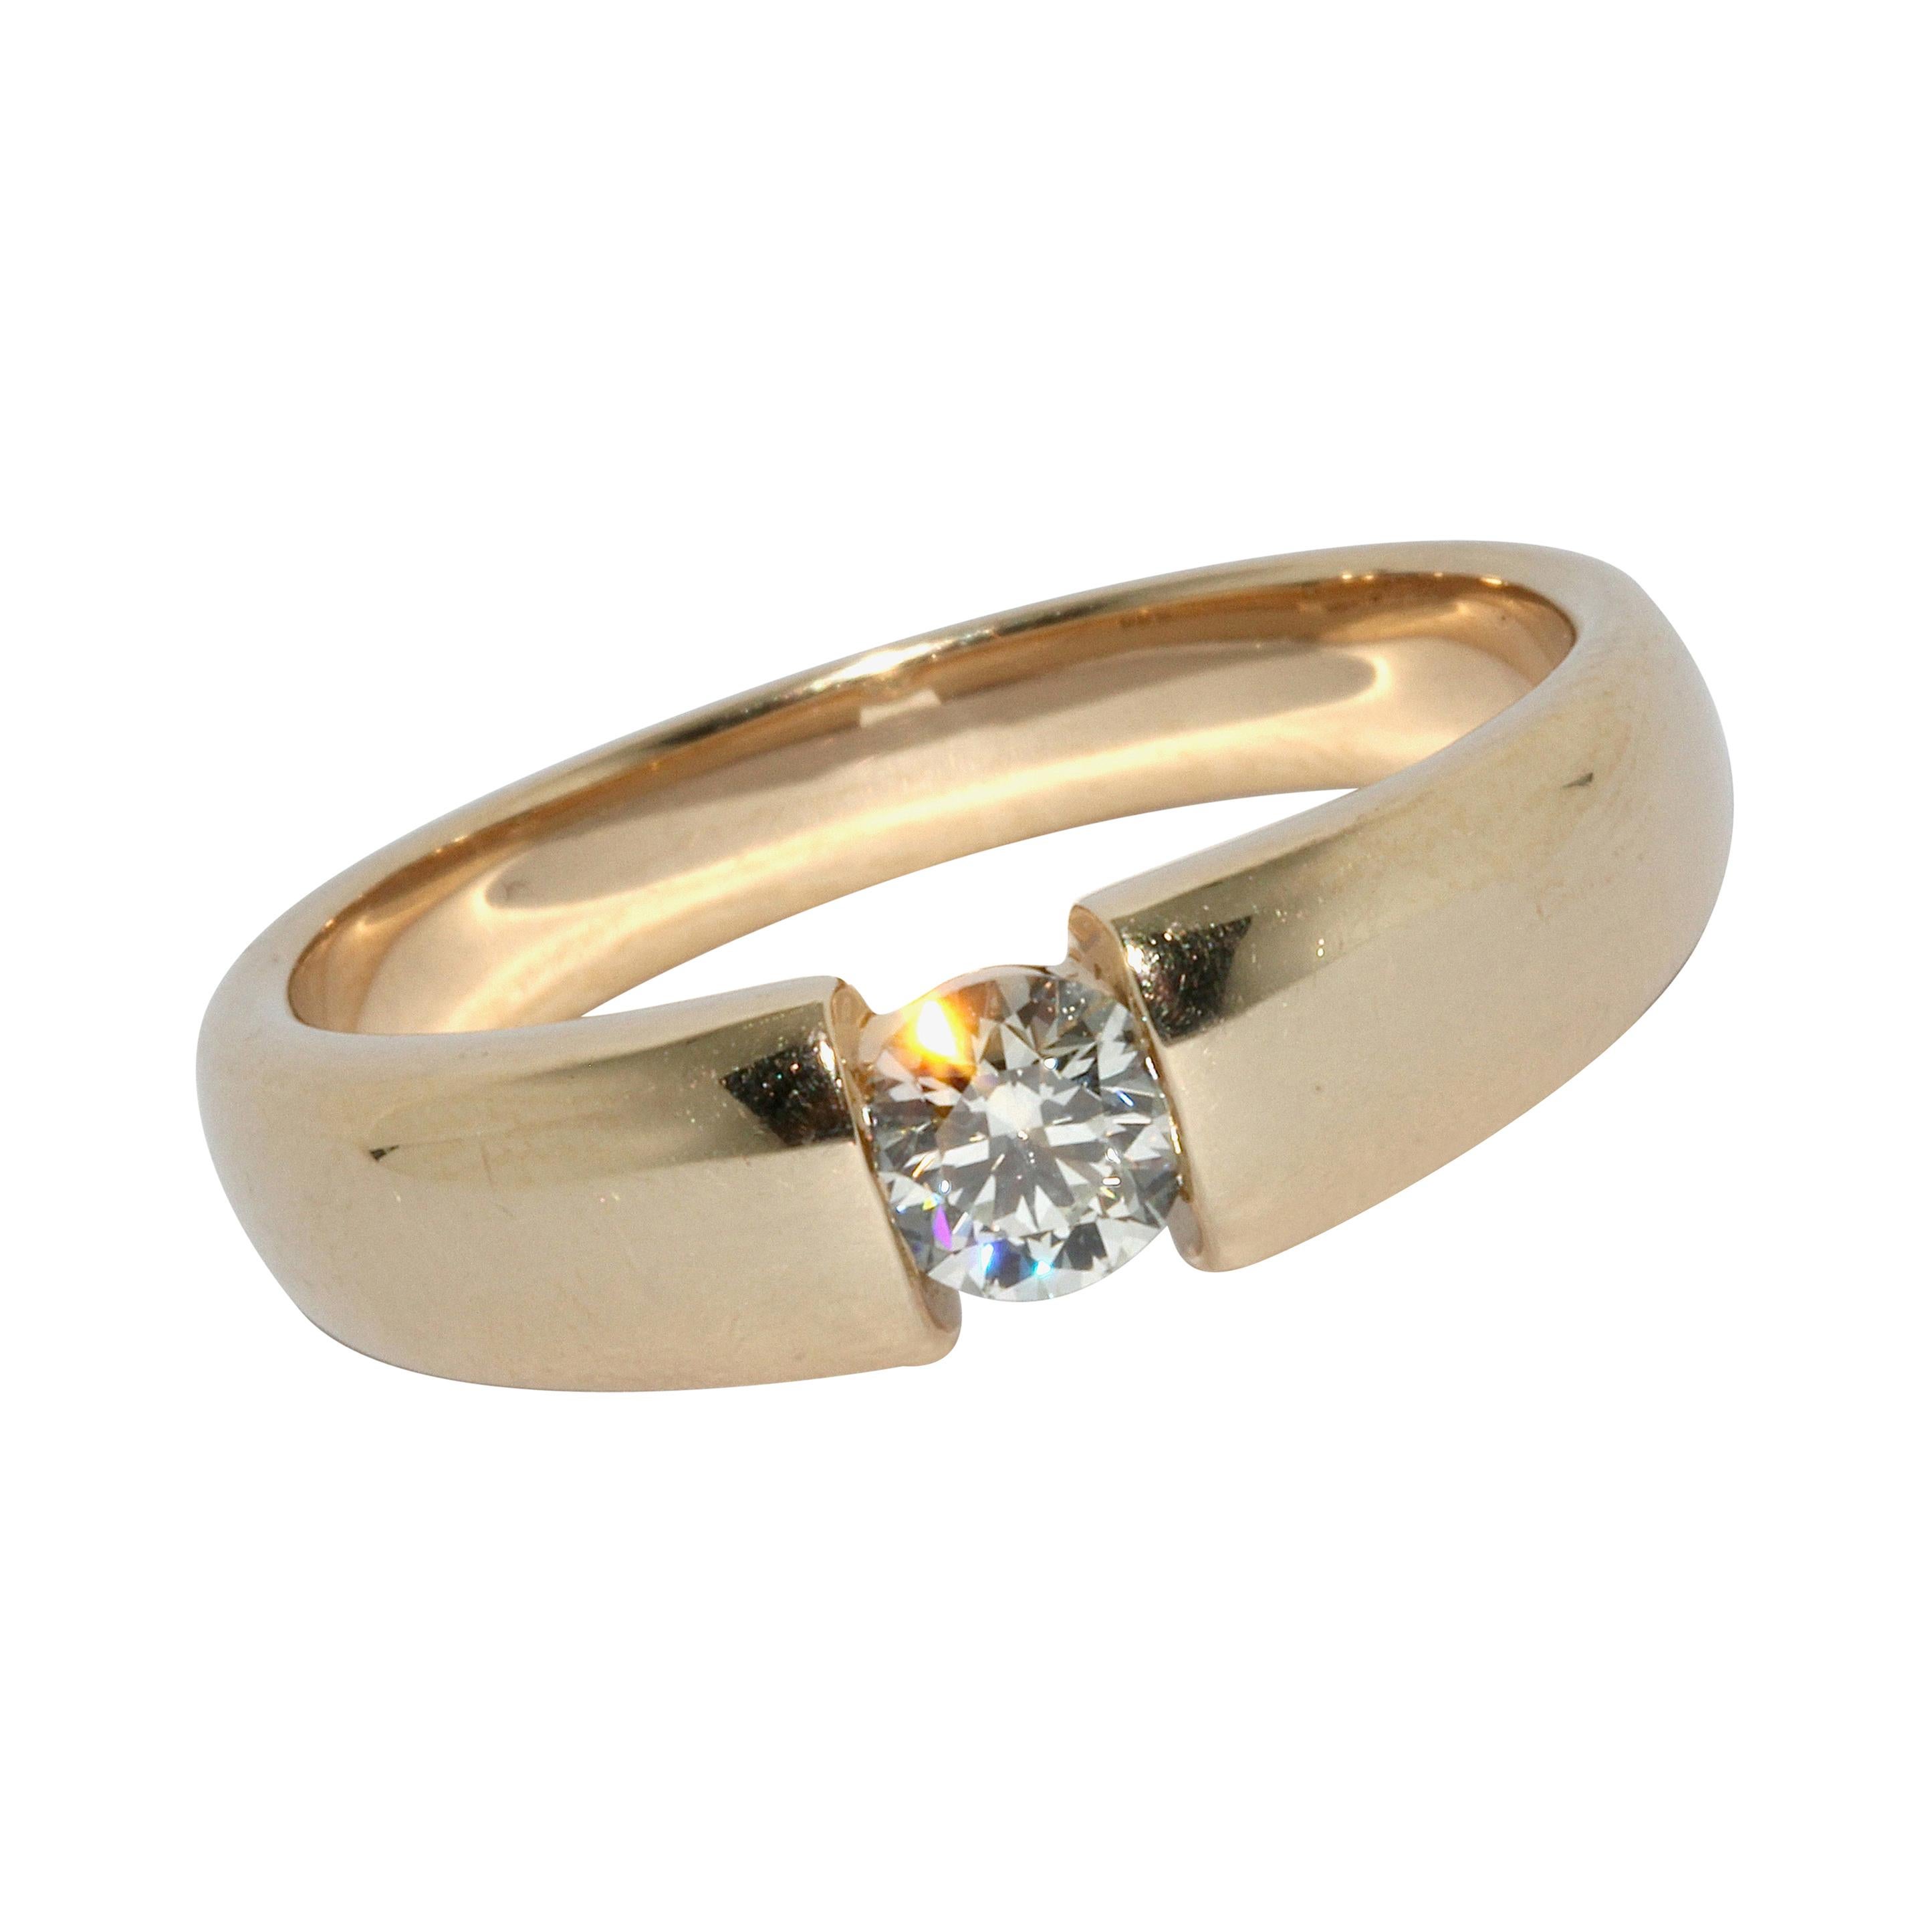 14 Karat Yellow Gold Tension Ring Set with 0.415 Carat White Diamond